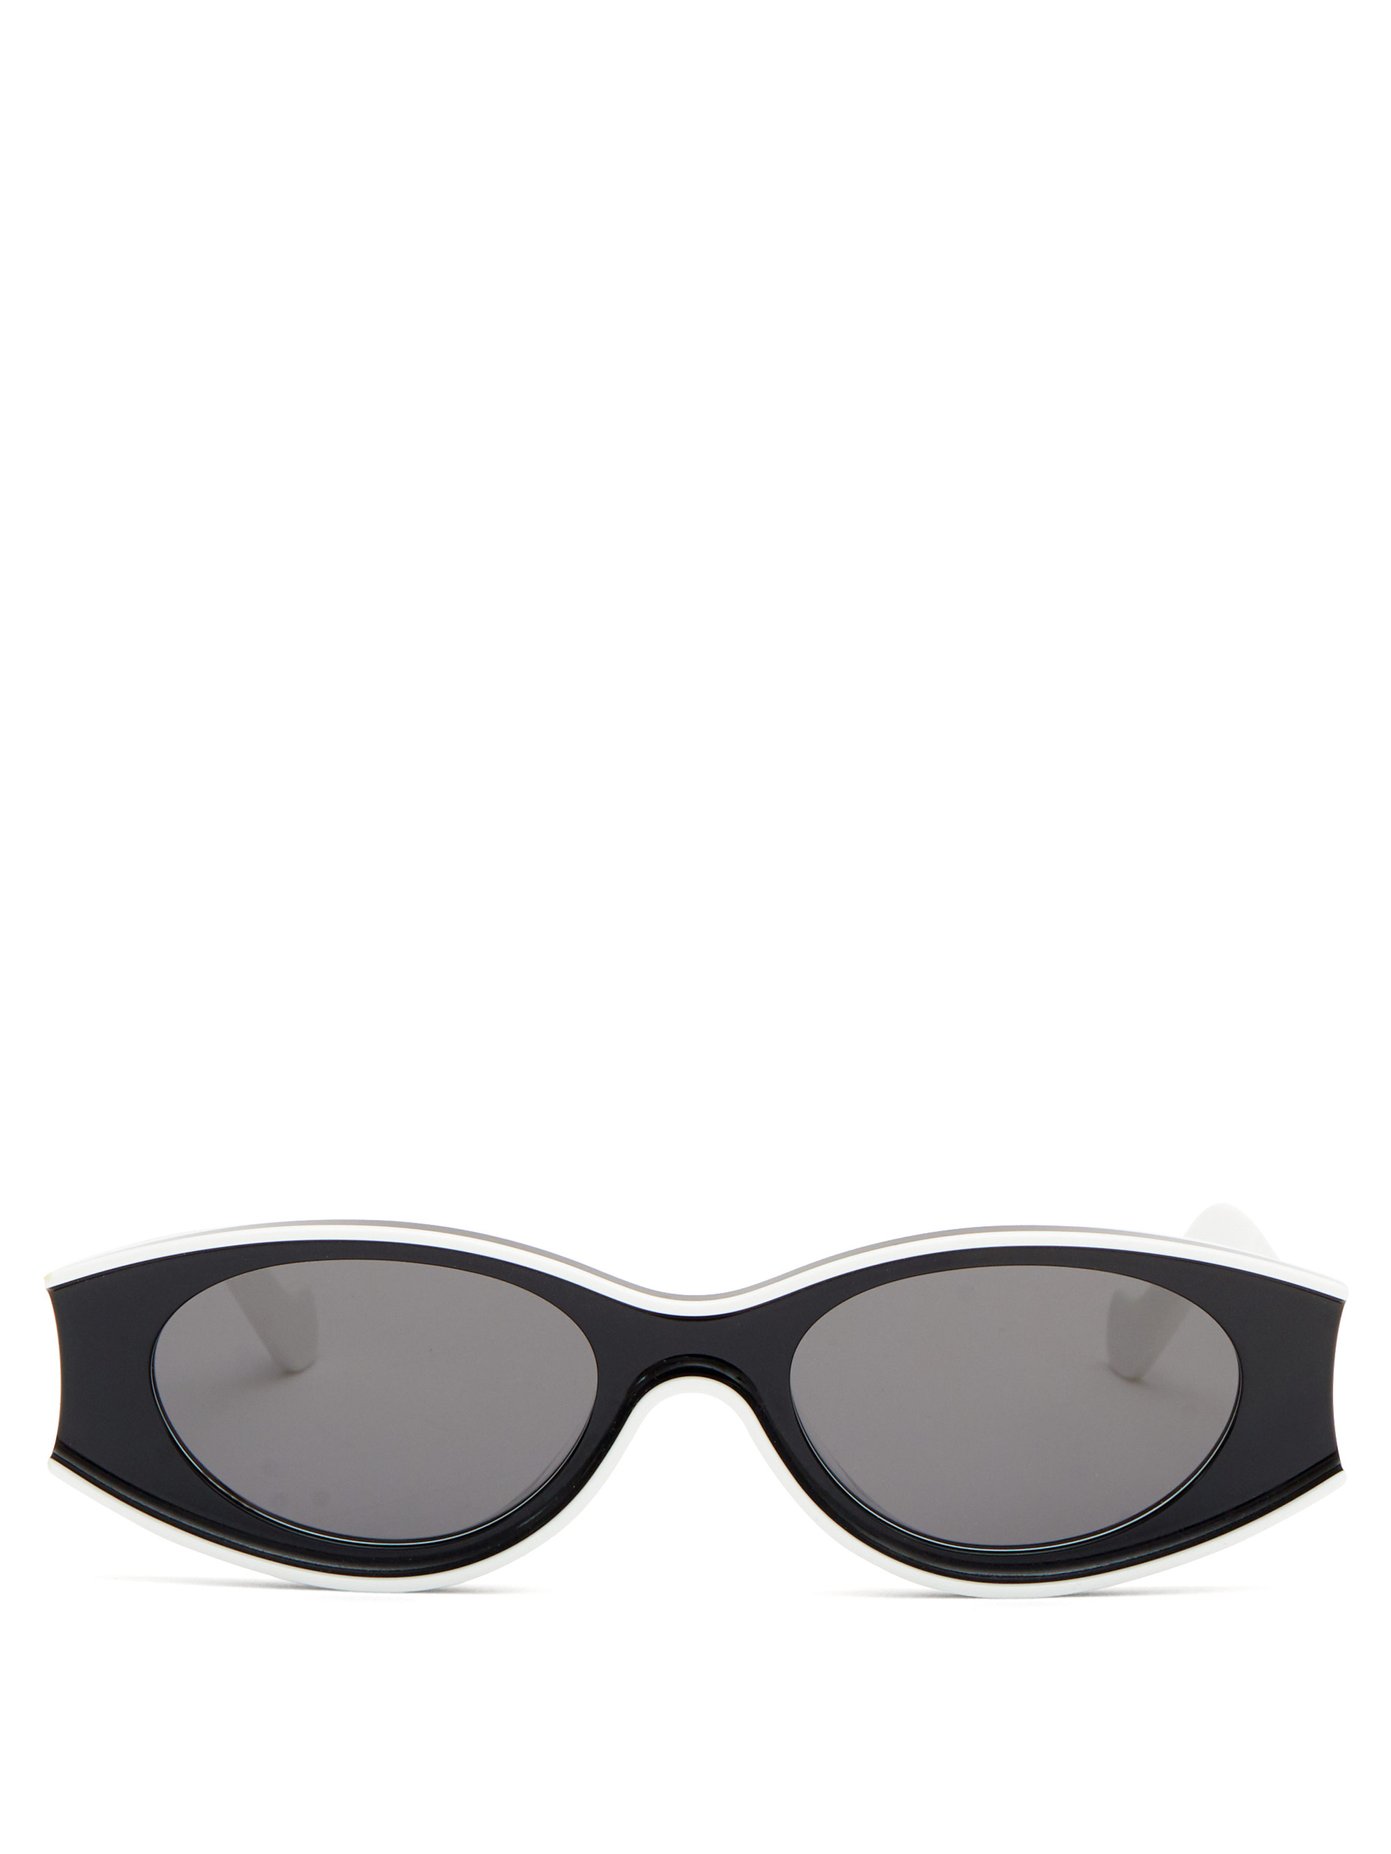 Oval acetate sunglasses | Loewe Paula's 